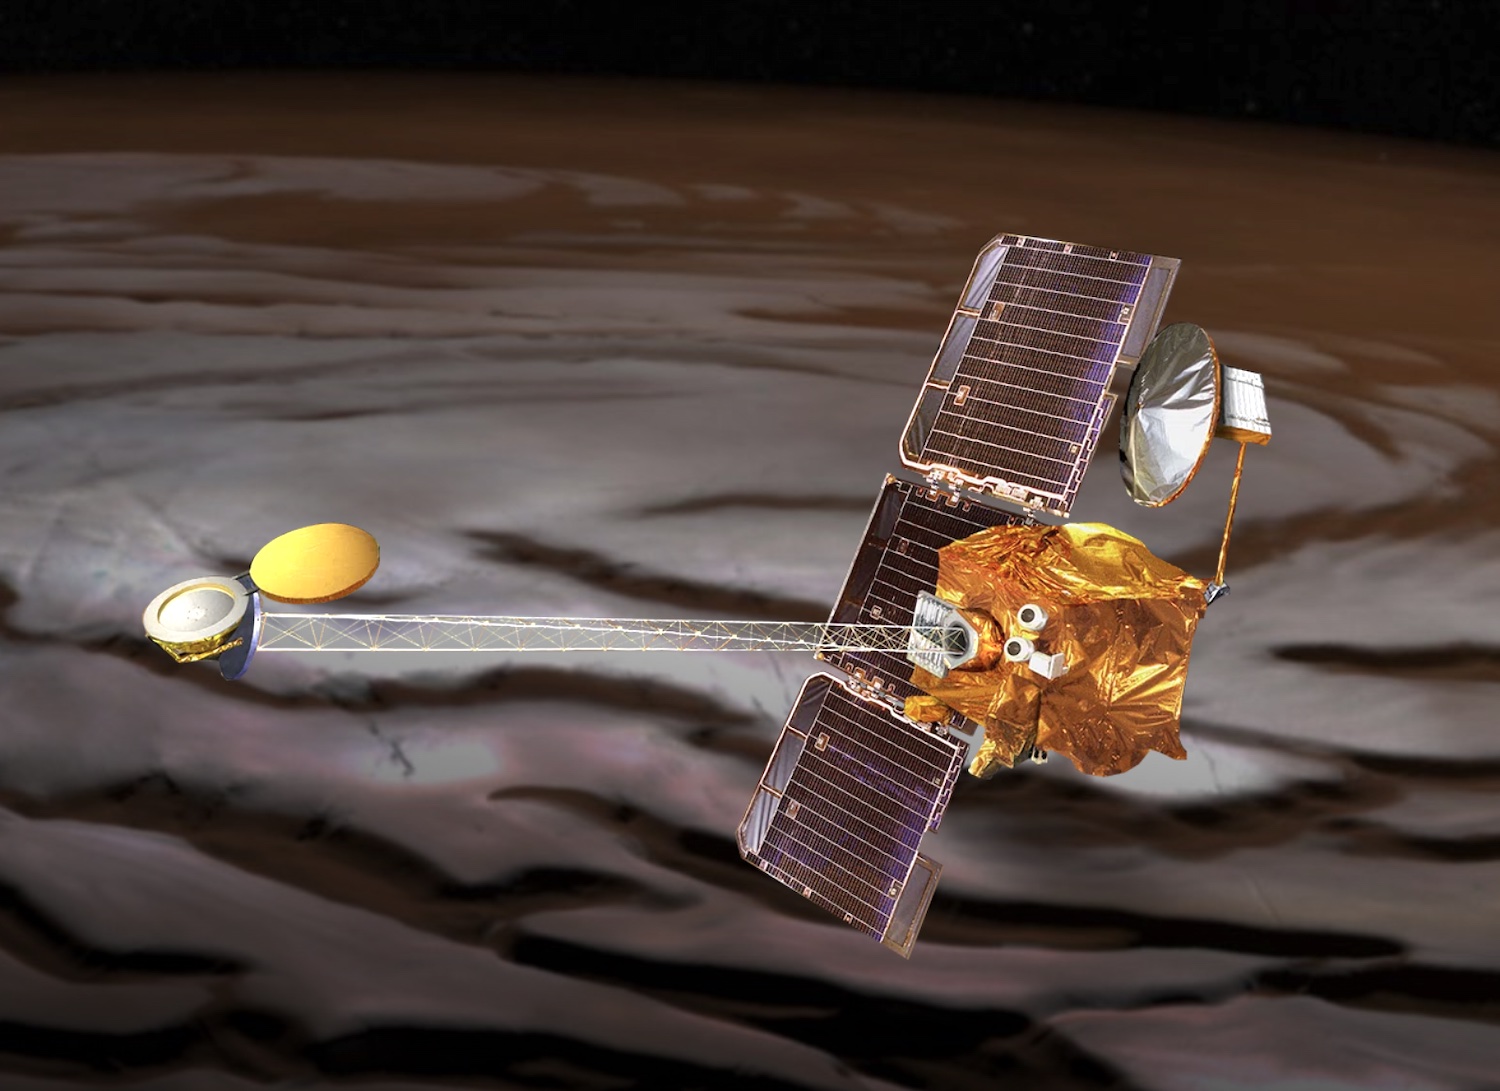 Mars Odyssey Orbiter de la NASA.